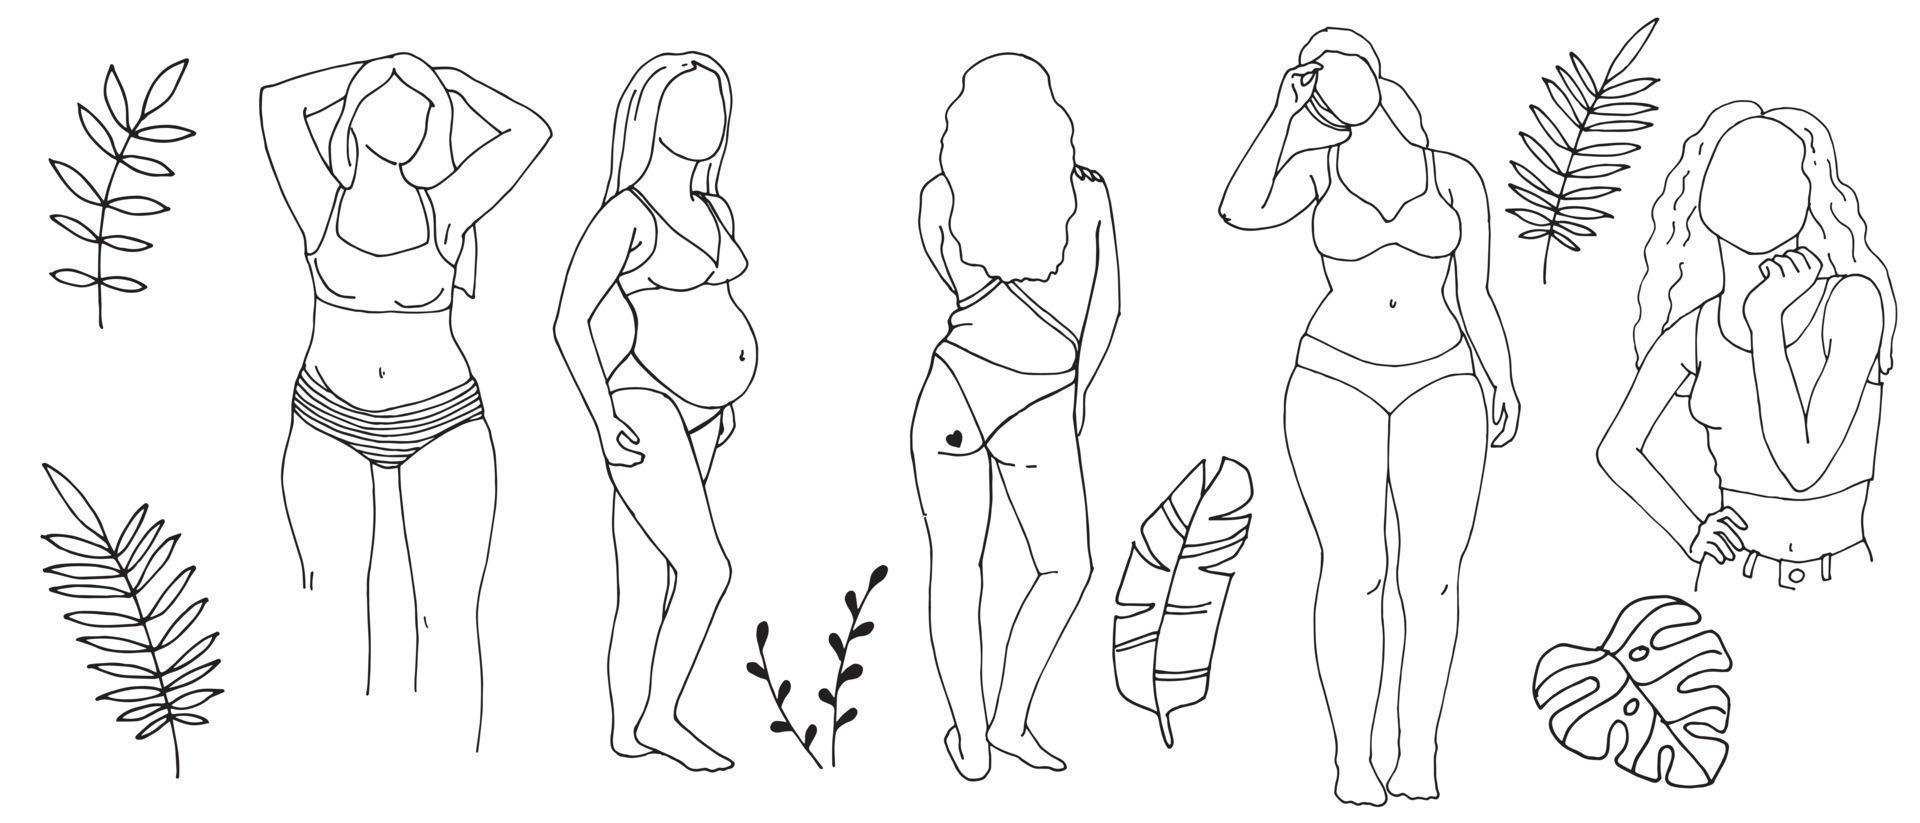 doodle stijl vectorillustratie, lijntekening. silhouetten van verschillende vrouwen in een bikini. jonge vrouwen met verschillende figuren in badpakken, eenvoudige tekening. body positive, feminisme, strandvakantie vector